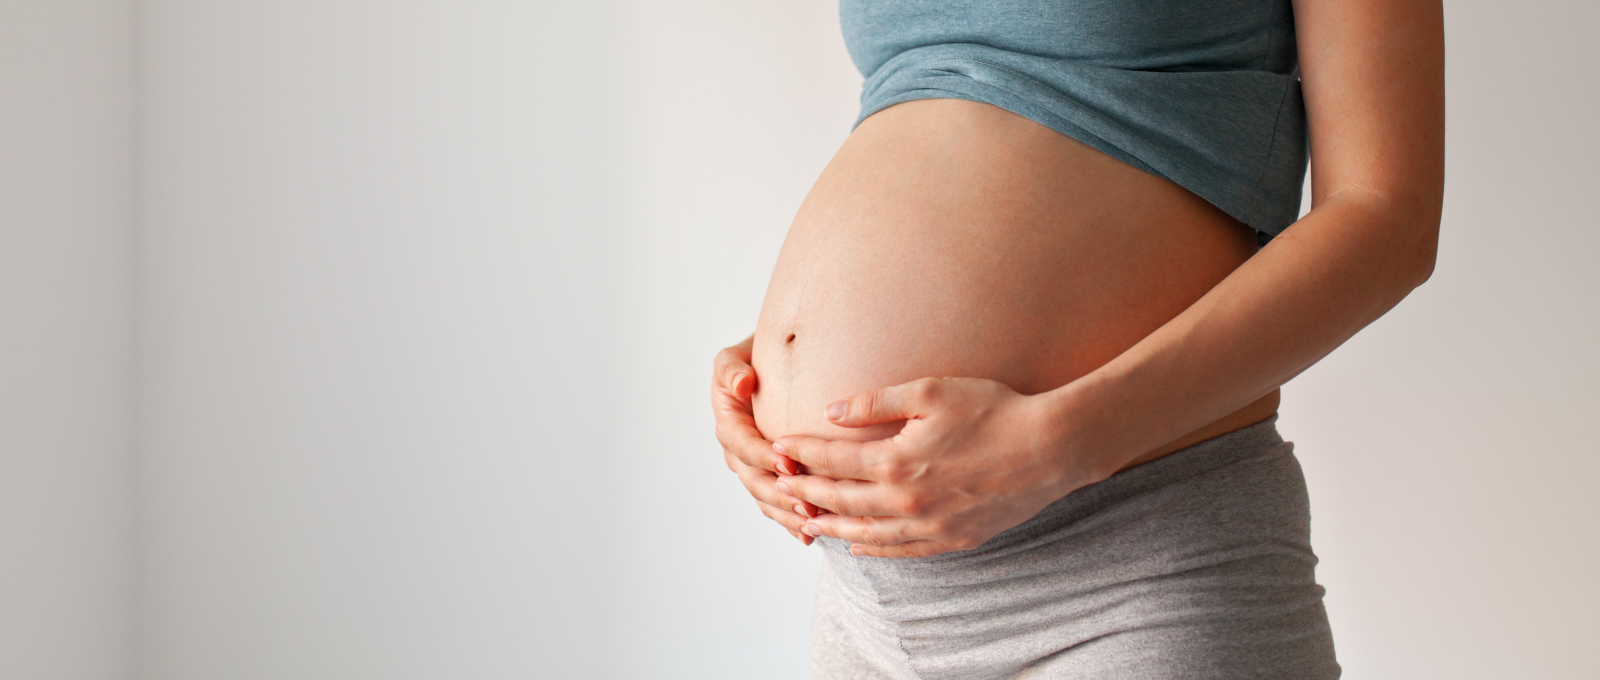 Un estudio profundiza en los efectos de la exposición de las mujeres embarazadas a sustancias químicas nocivas